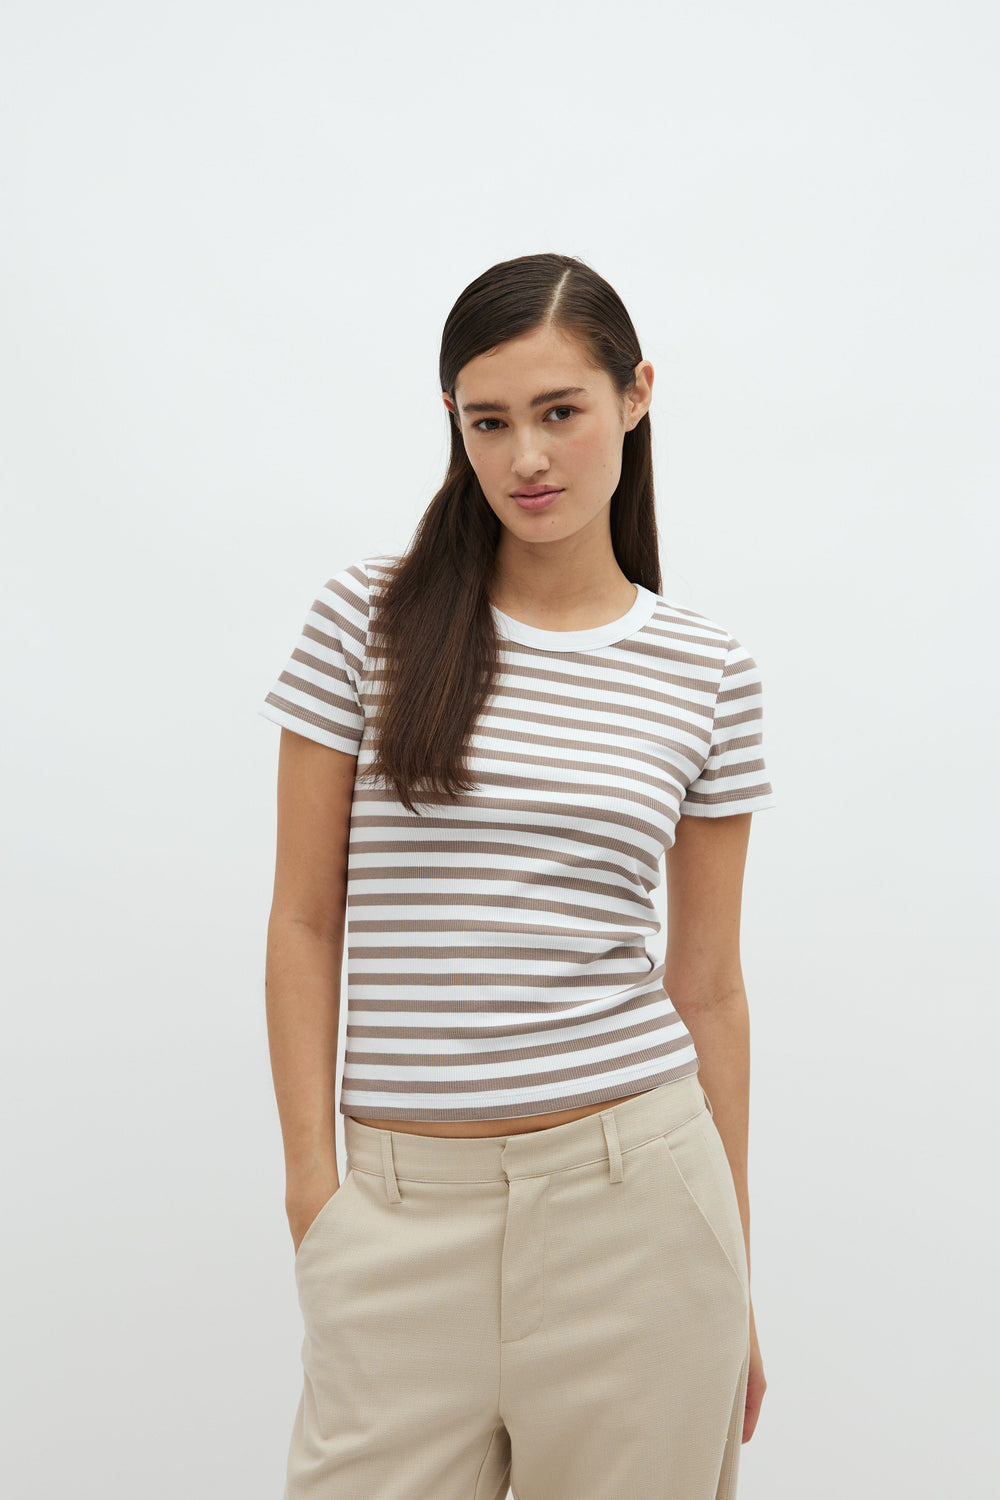 MbyM - Otis-M - P98 White Cinder Stripe T-shirts 